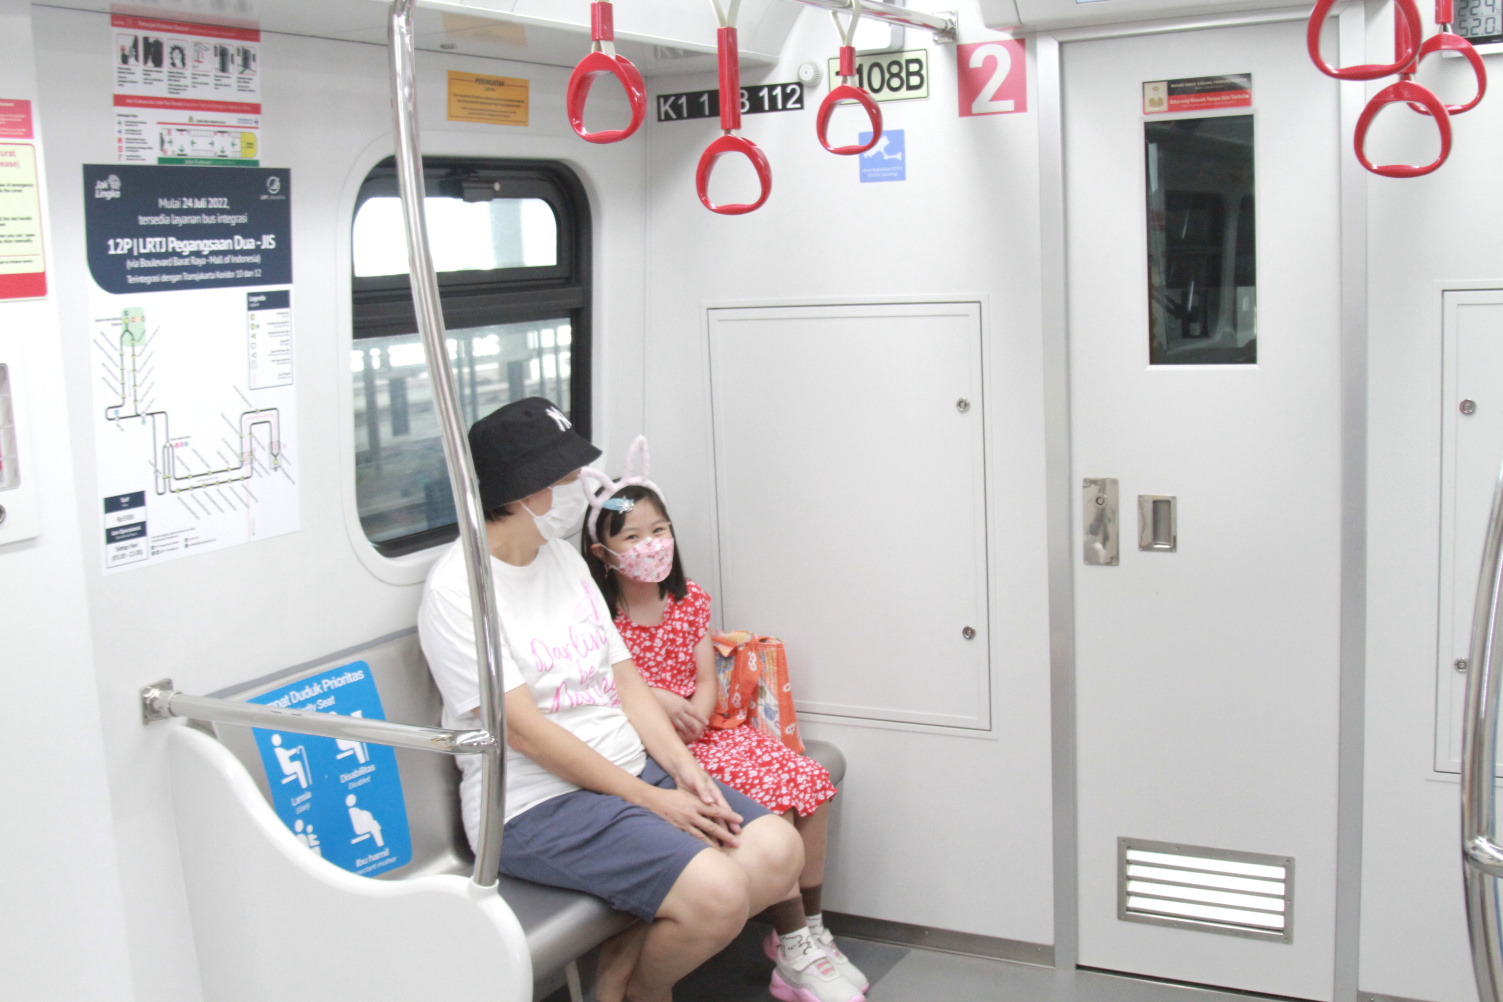 LRT kini hadir dengan pelayanan nyaman dan aman tersedia ruangan kesehatan dan ruangan anak (Ashar/SinPo.id)